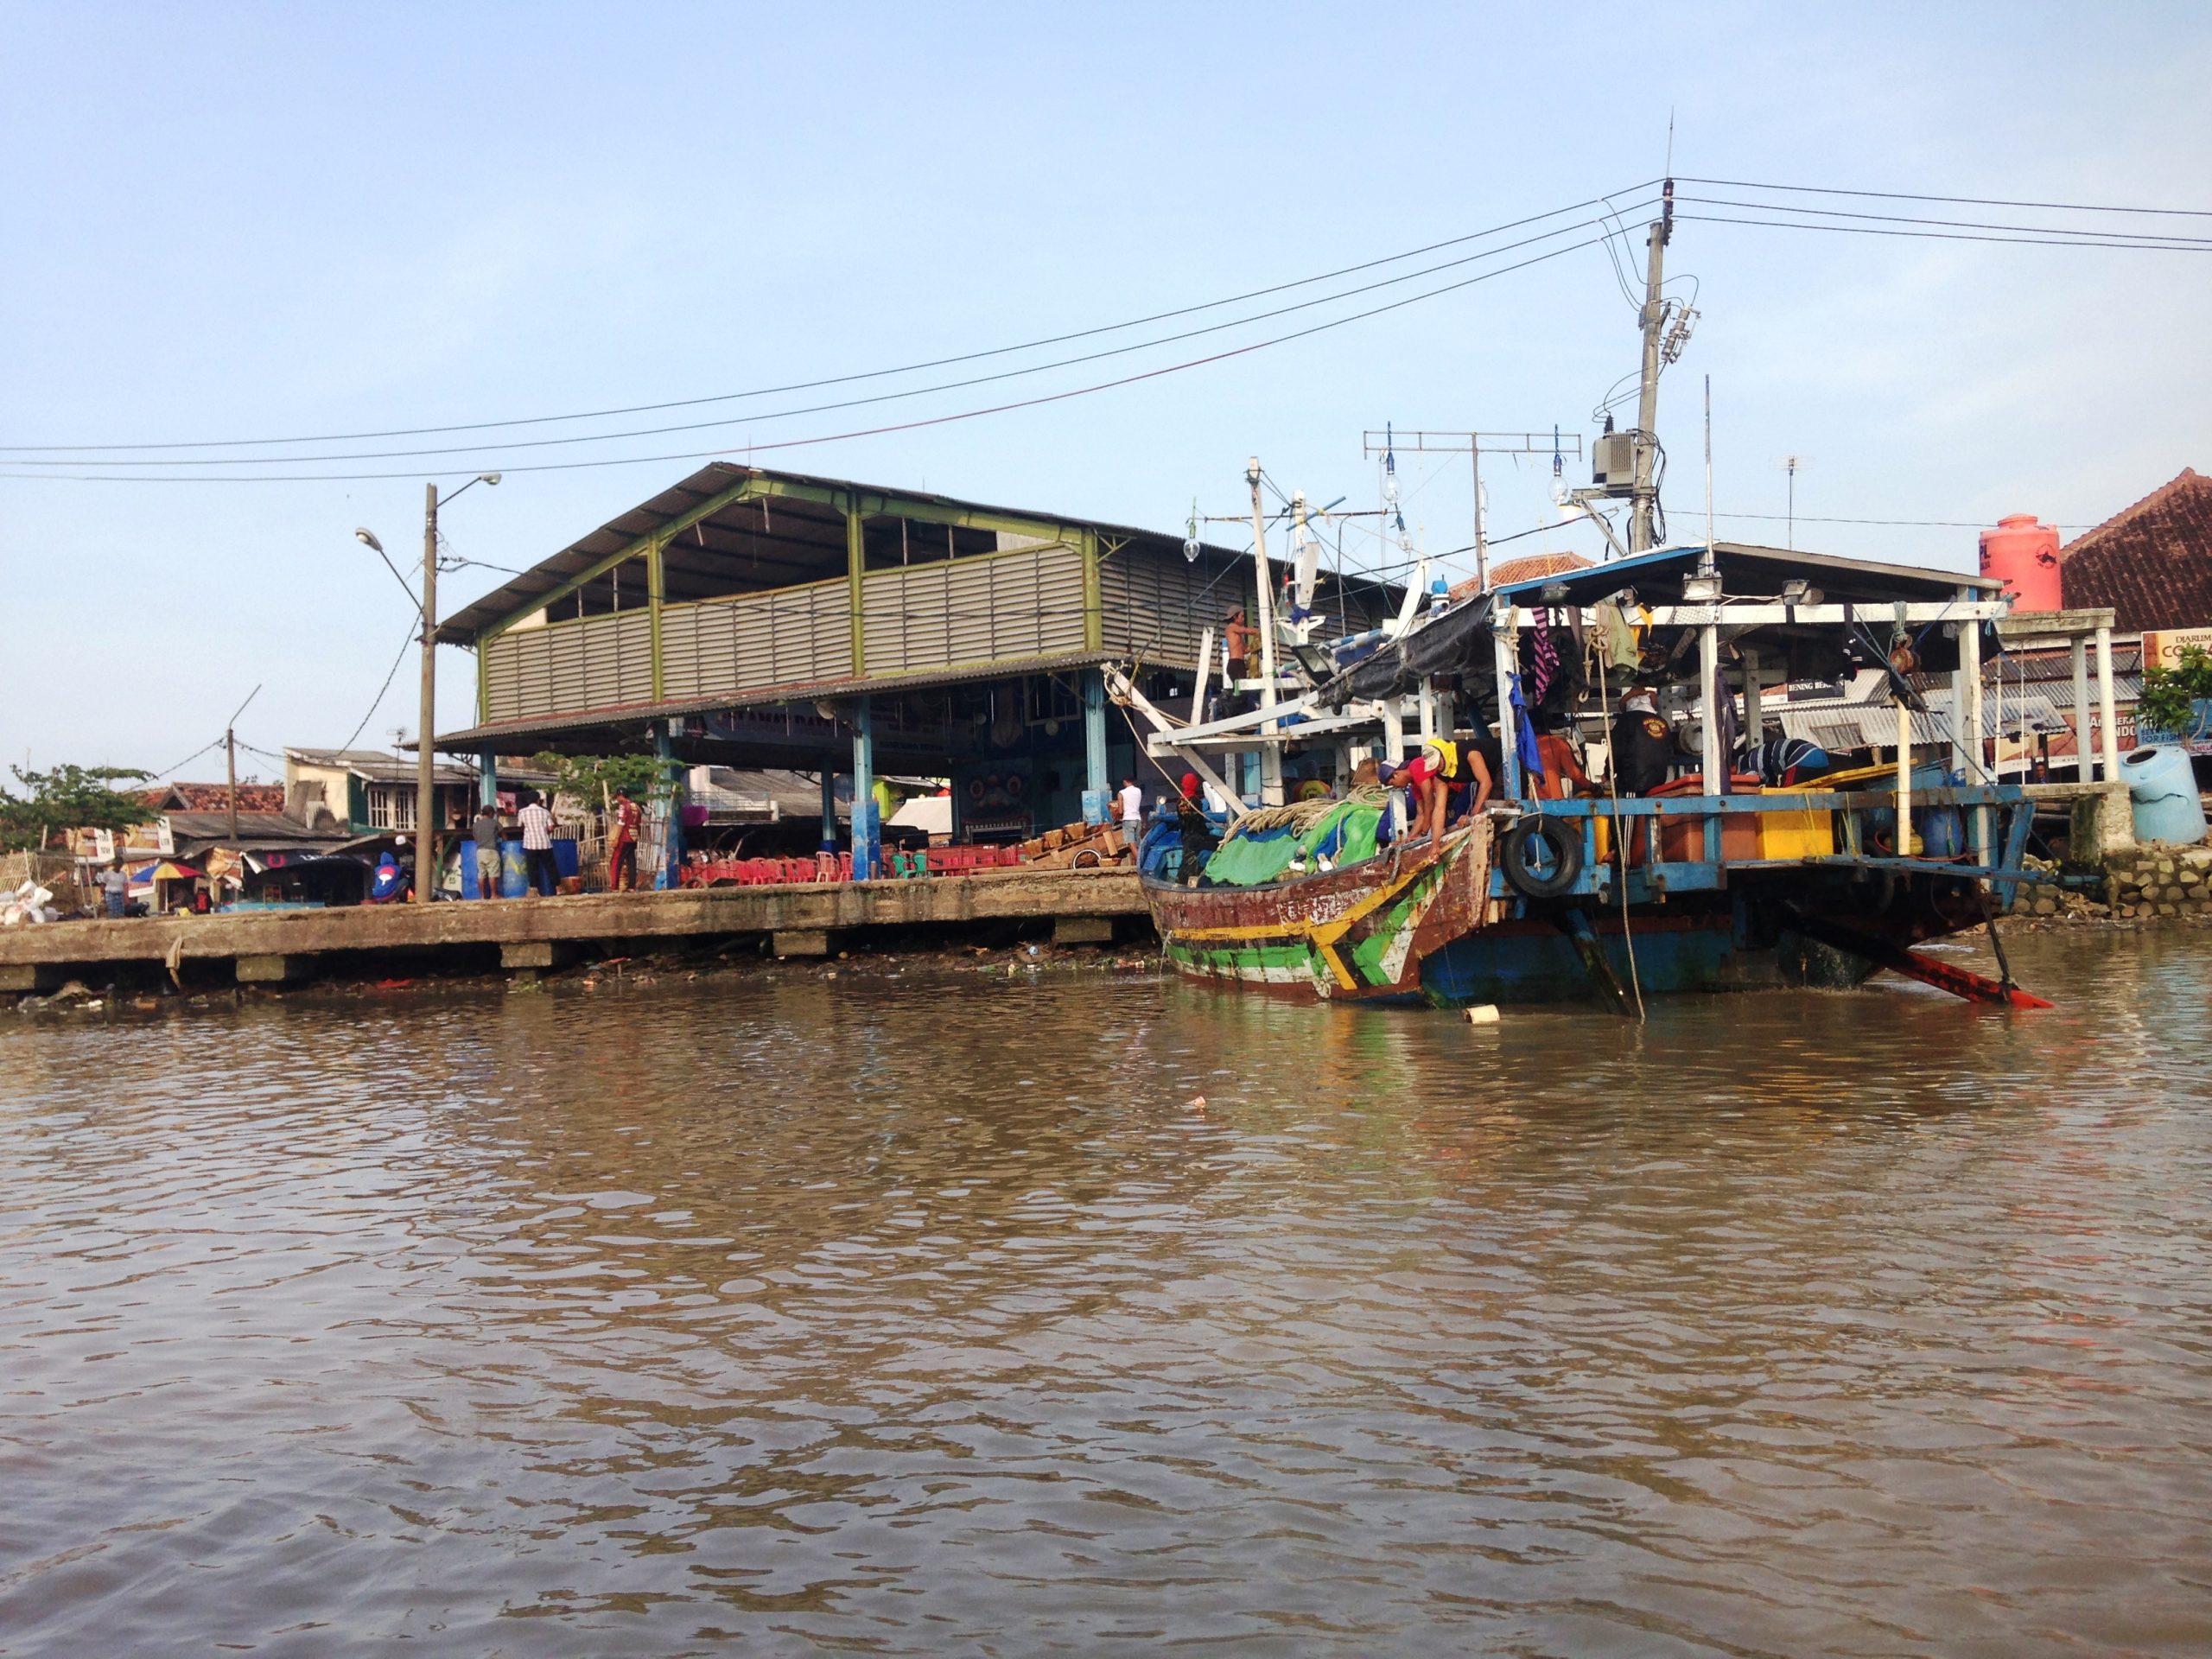 Harga Rajungan Anjlok, Ribuan Nelayan Nganggur